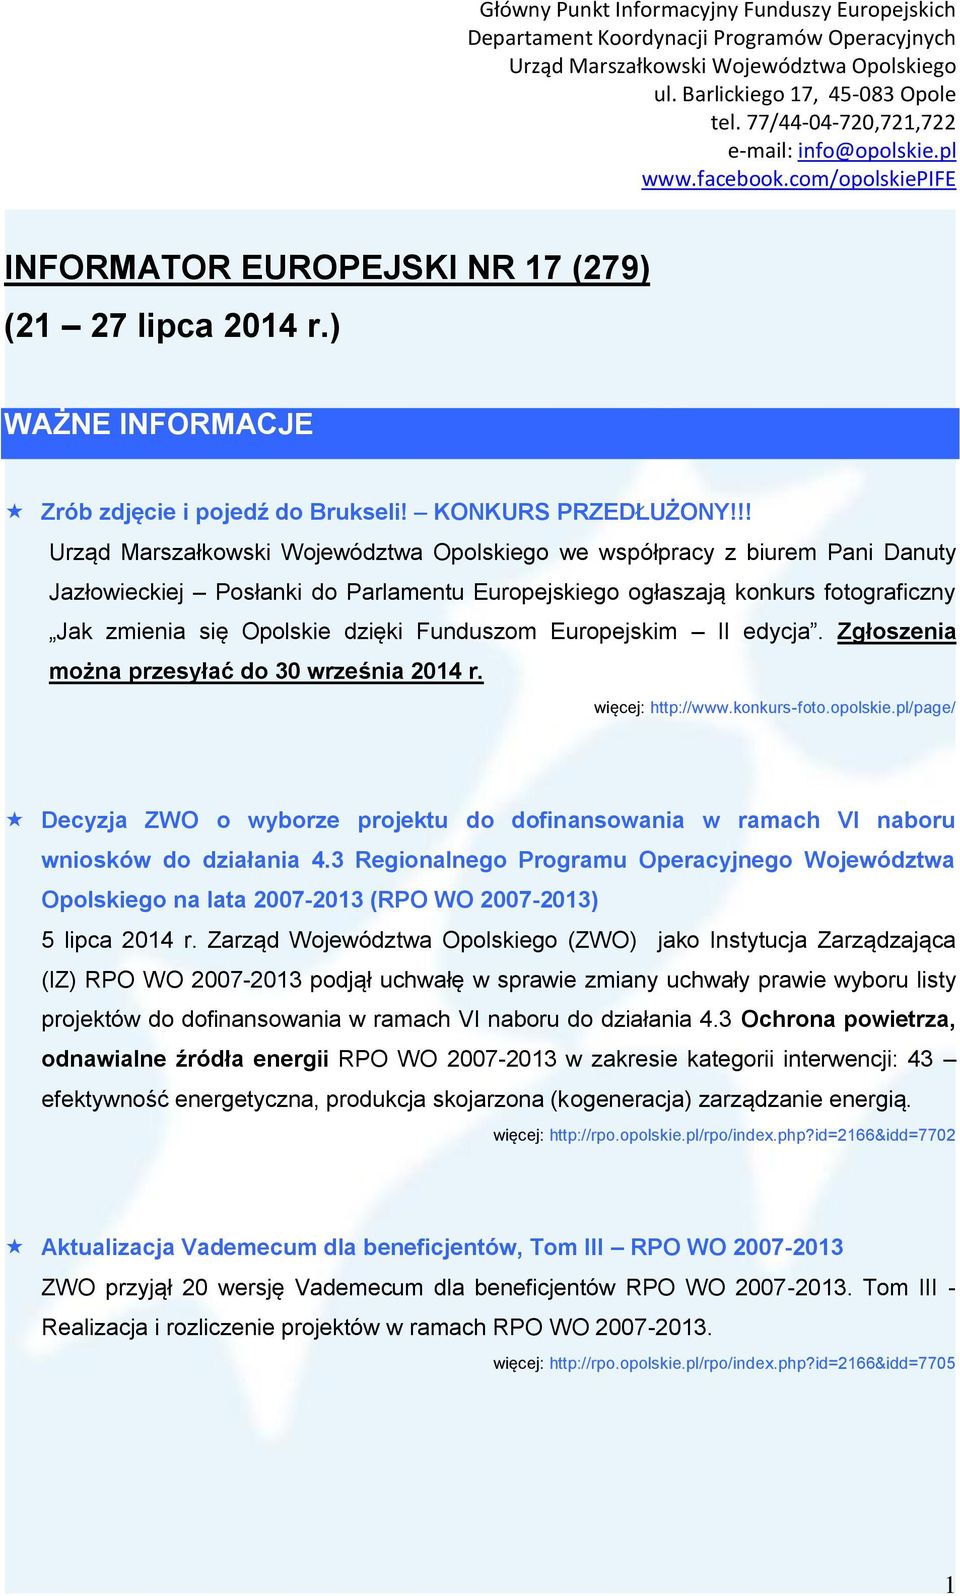 Zgłoszenia można przesyłać do 30 września 2014 r. więcej: http://www.konkurs-foto.opolskie.pl/page/ Decyzja ZWO o wyborze projektu do dofinansowania w ramach VI naboru wniosków do działania 4.